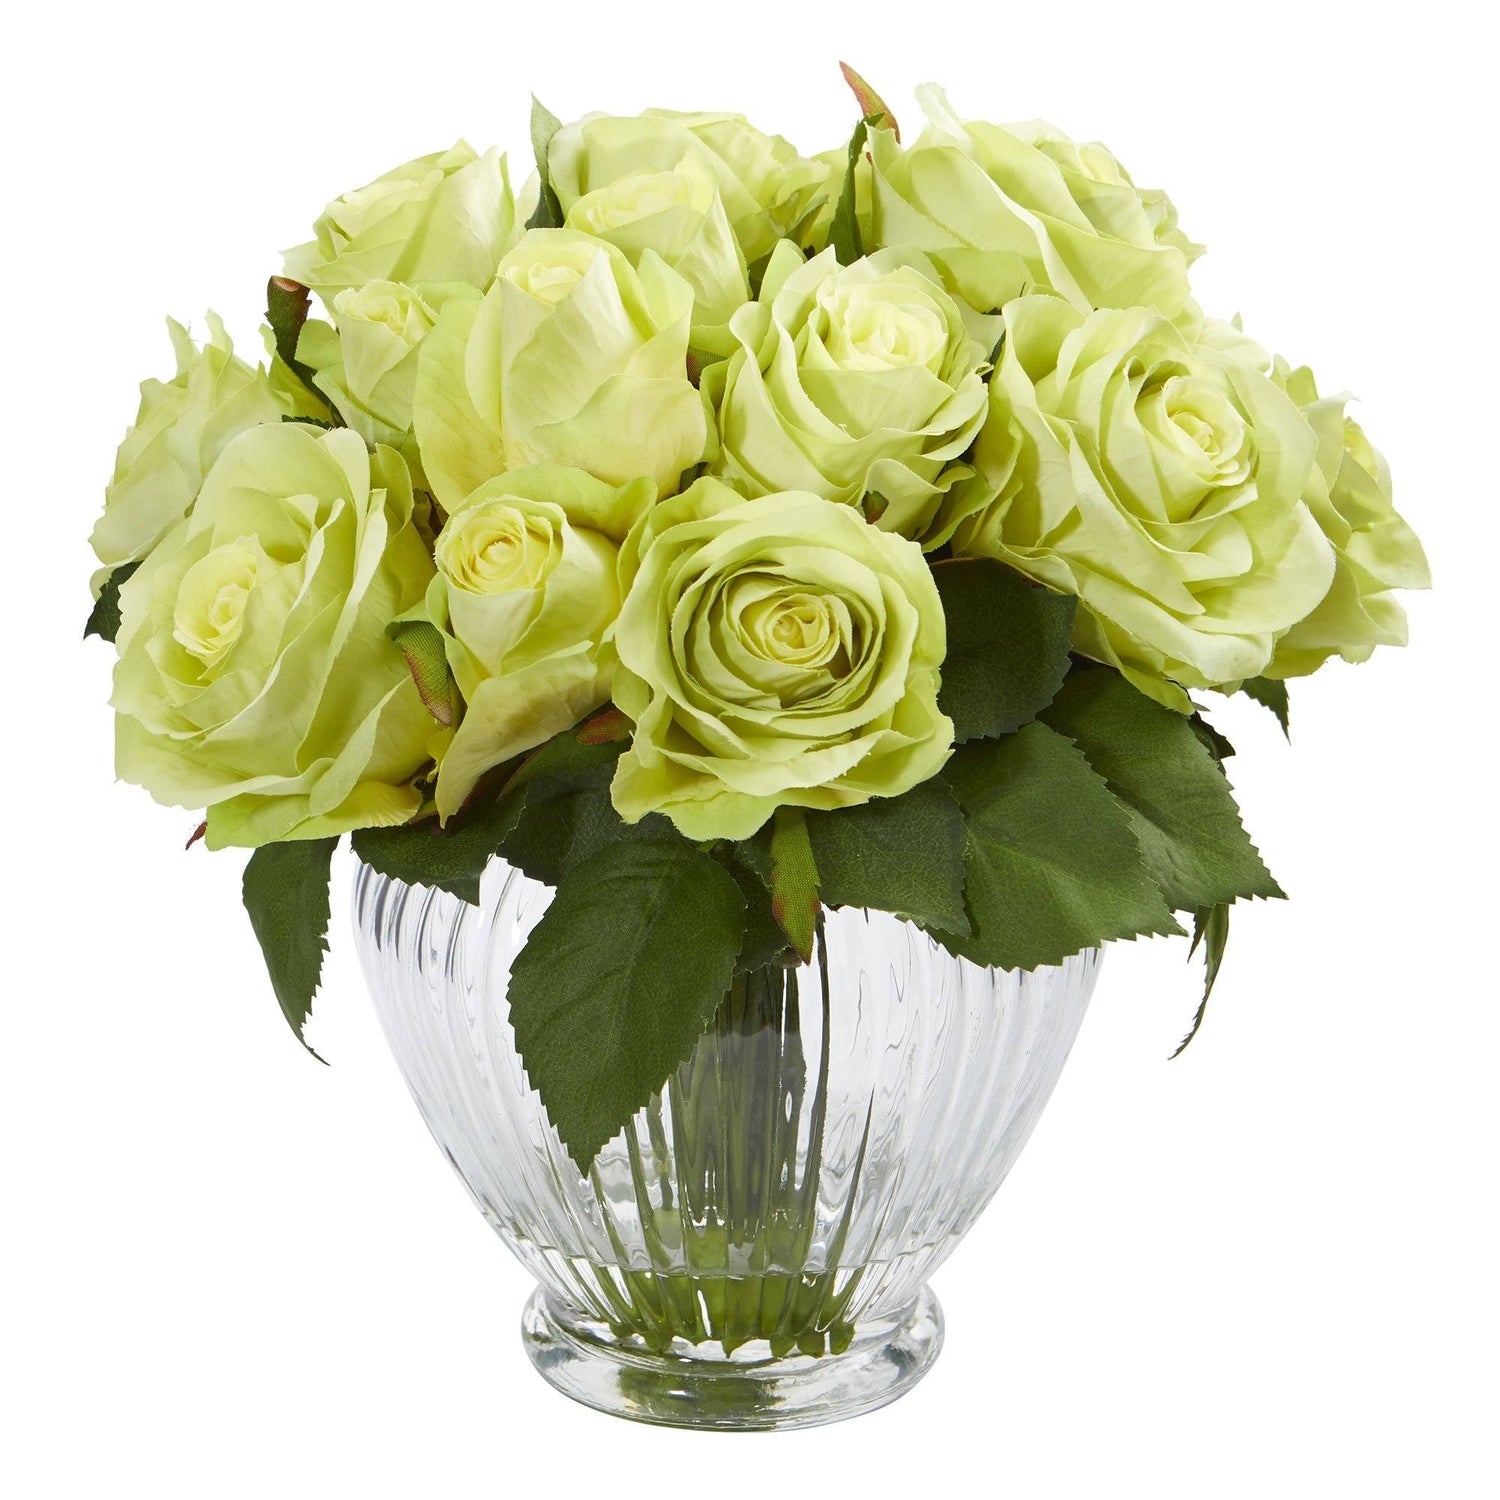 9” Rose Artificial Floral Arrangement in Elegant Glass Vase